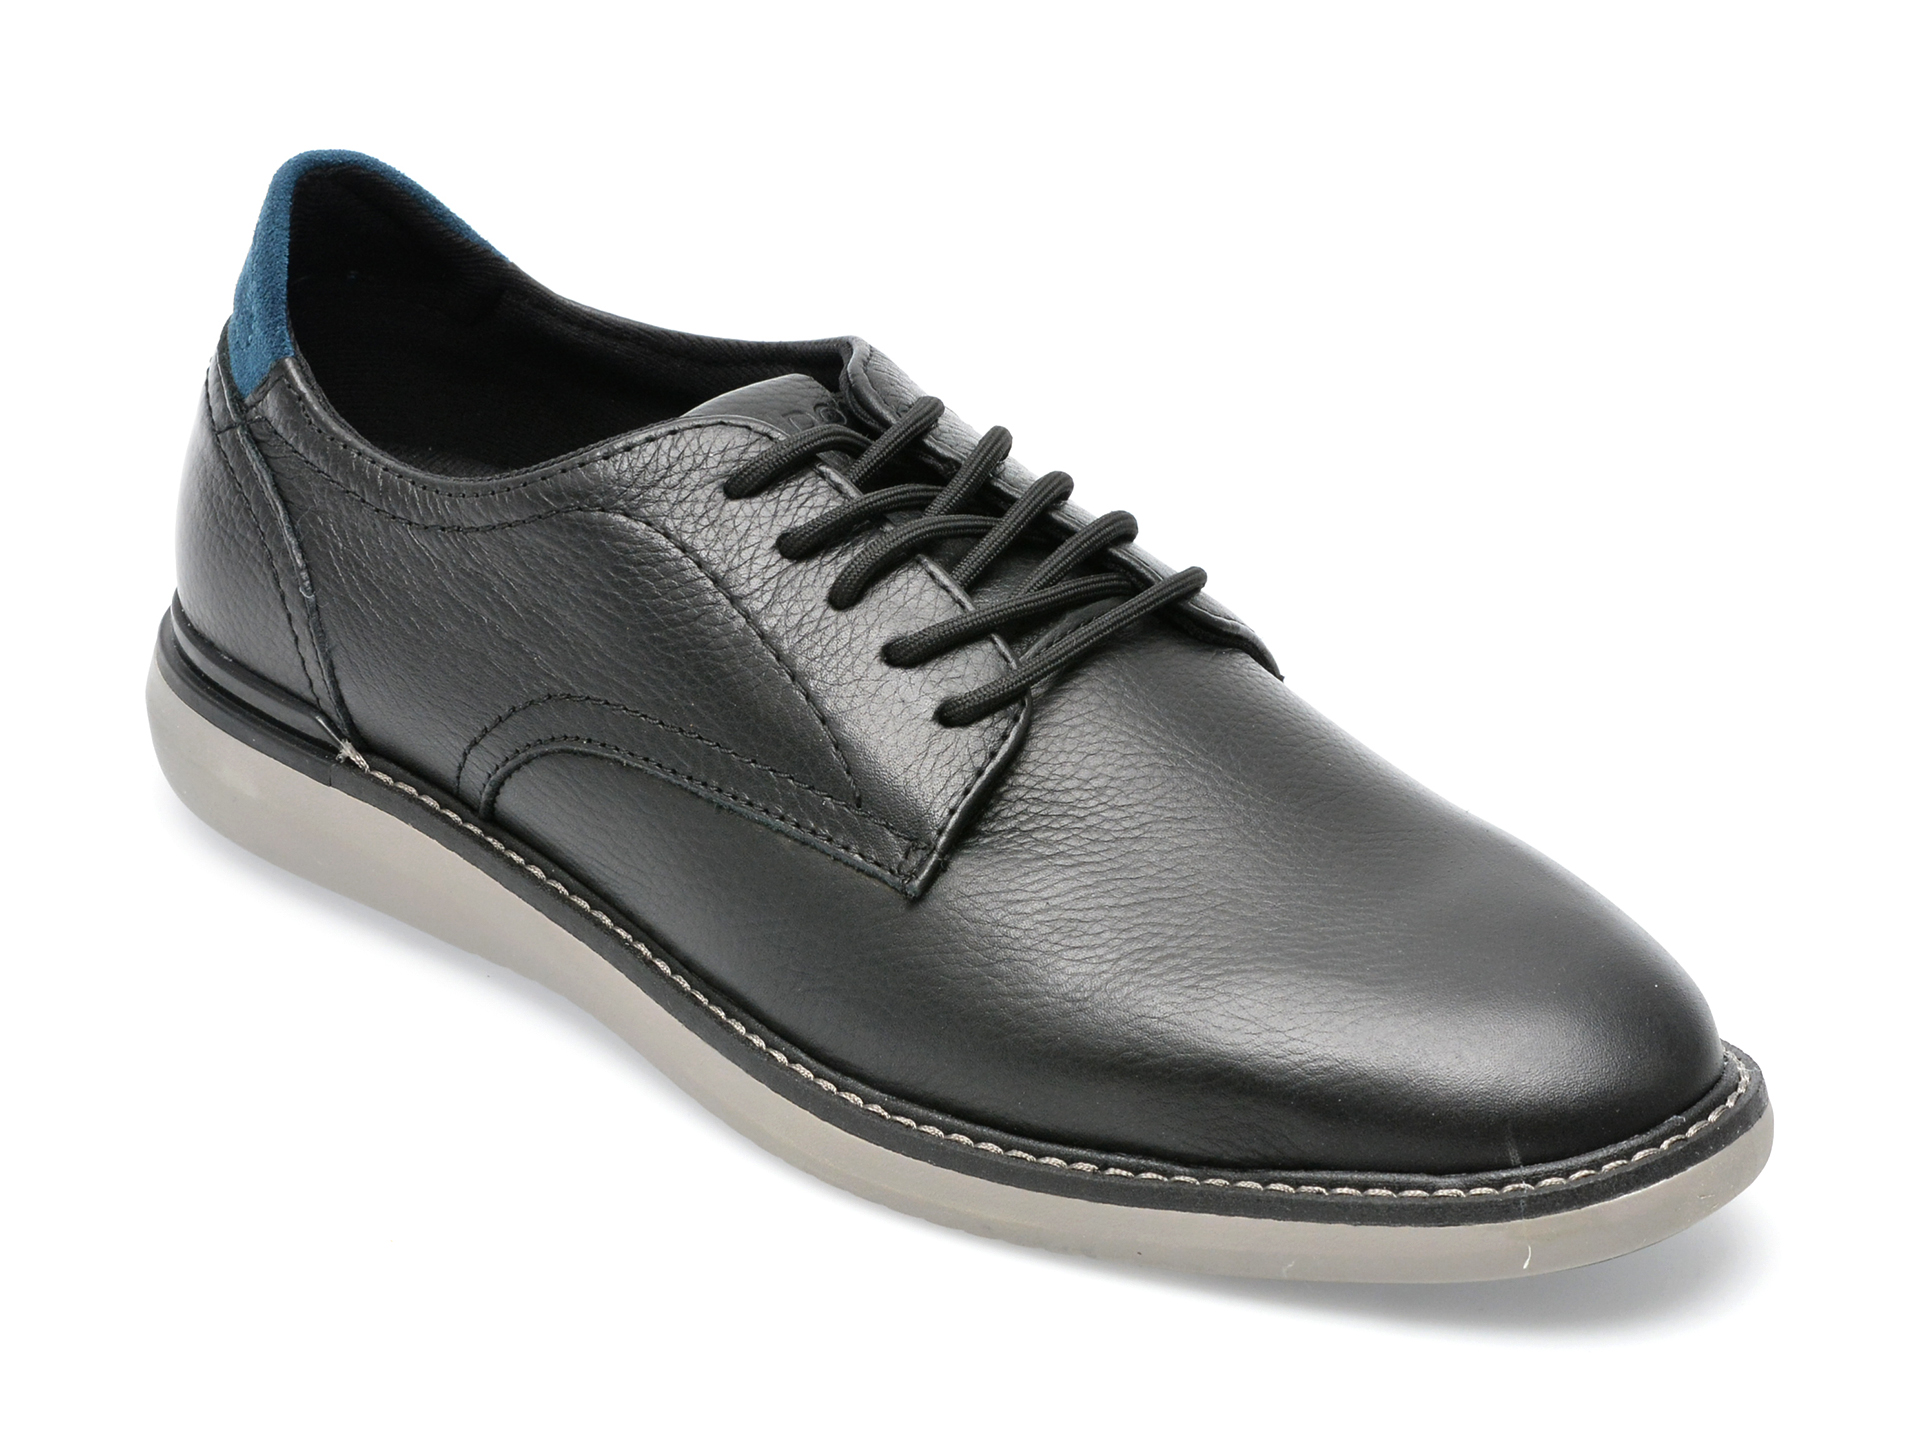 Pantofi ALDO negri, RAKERSGRIP001, din piele naturala Aldo